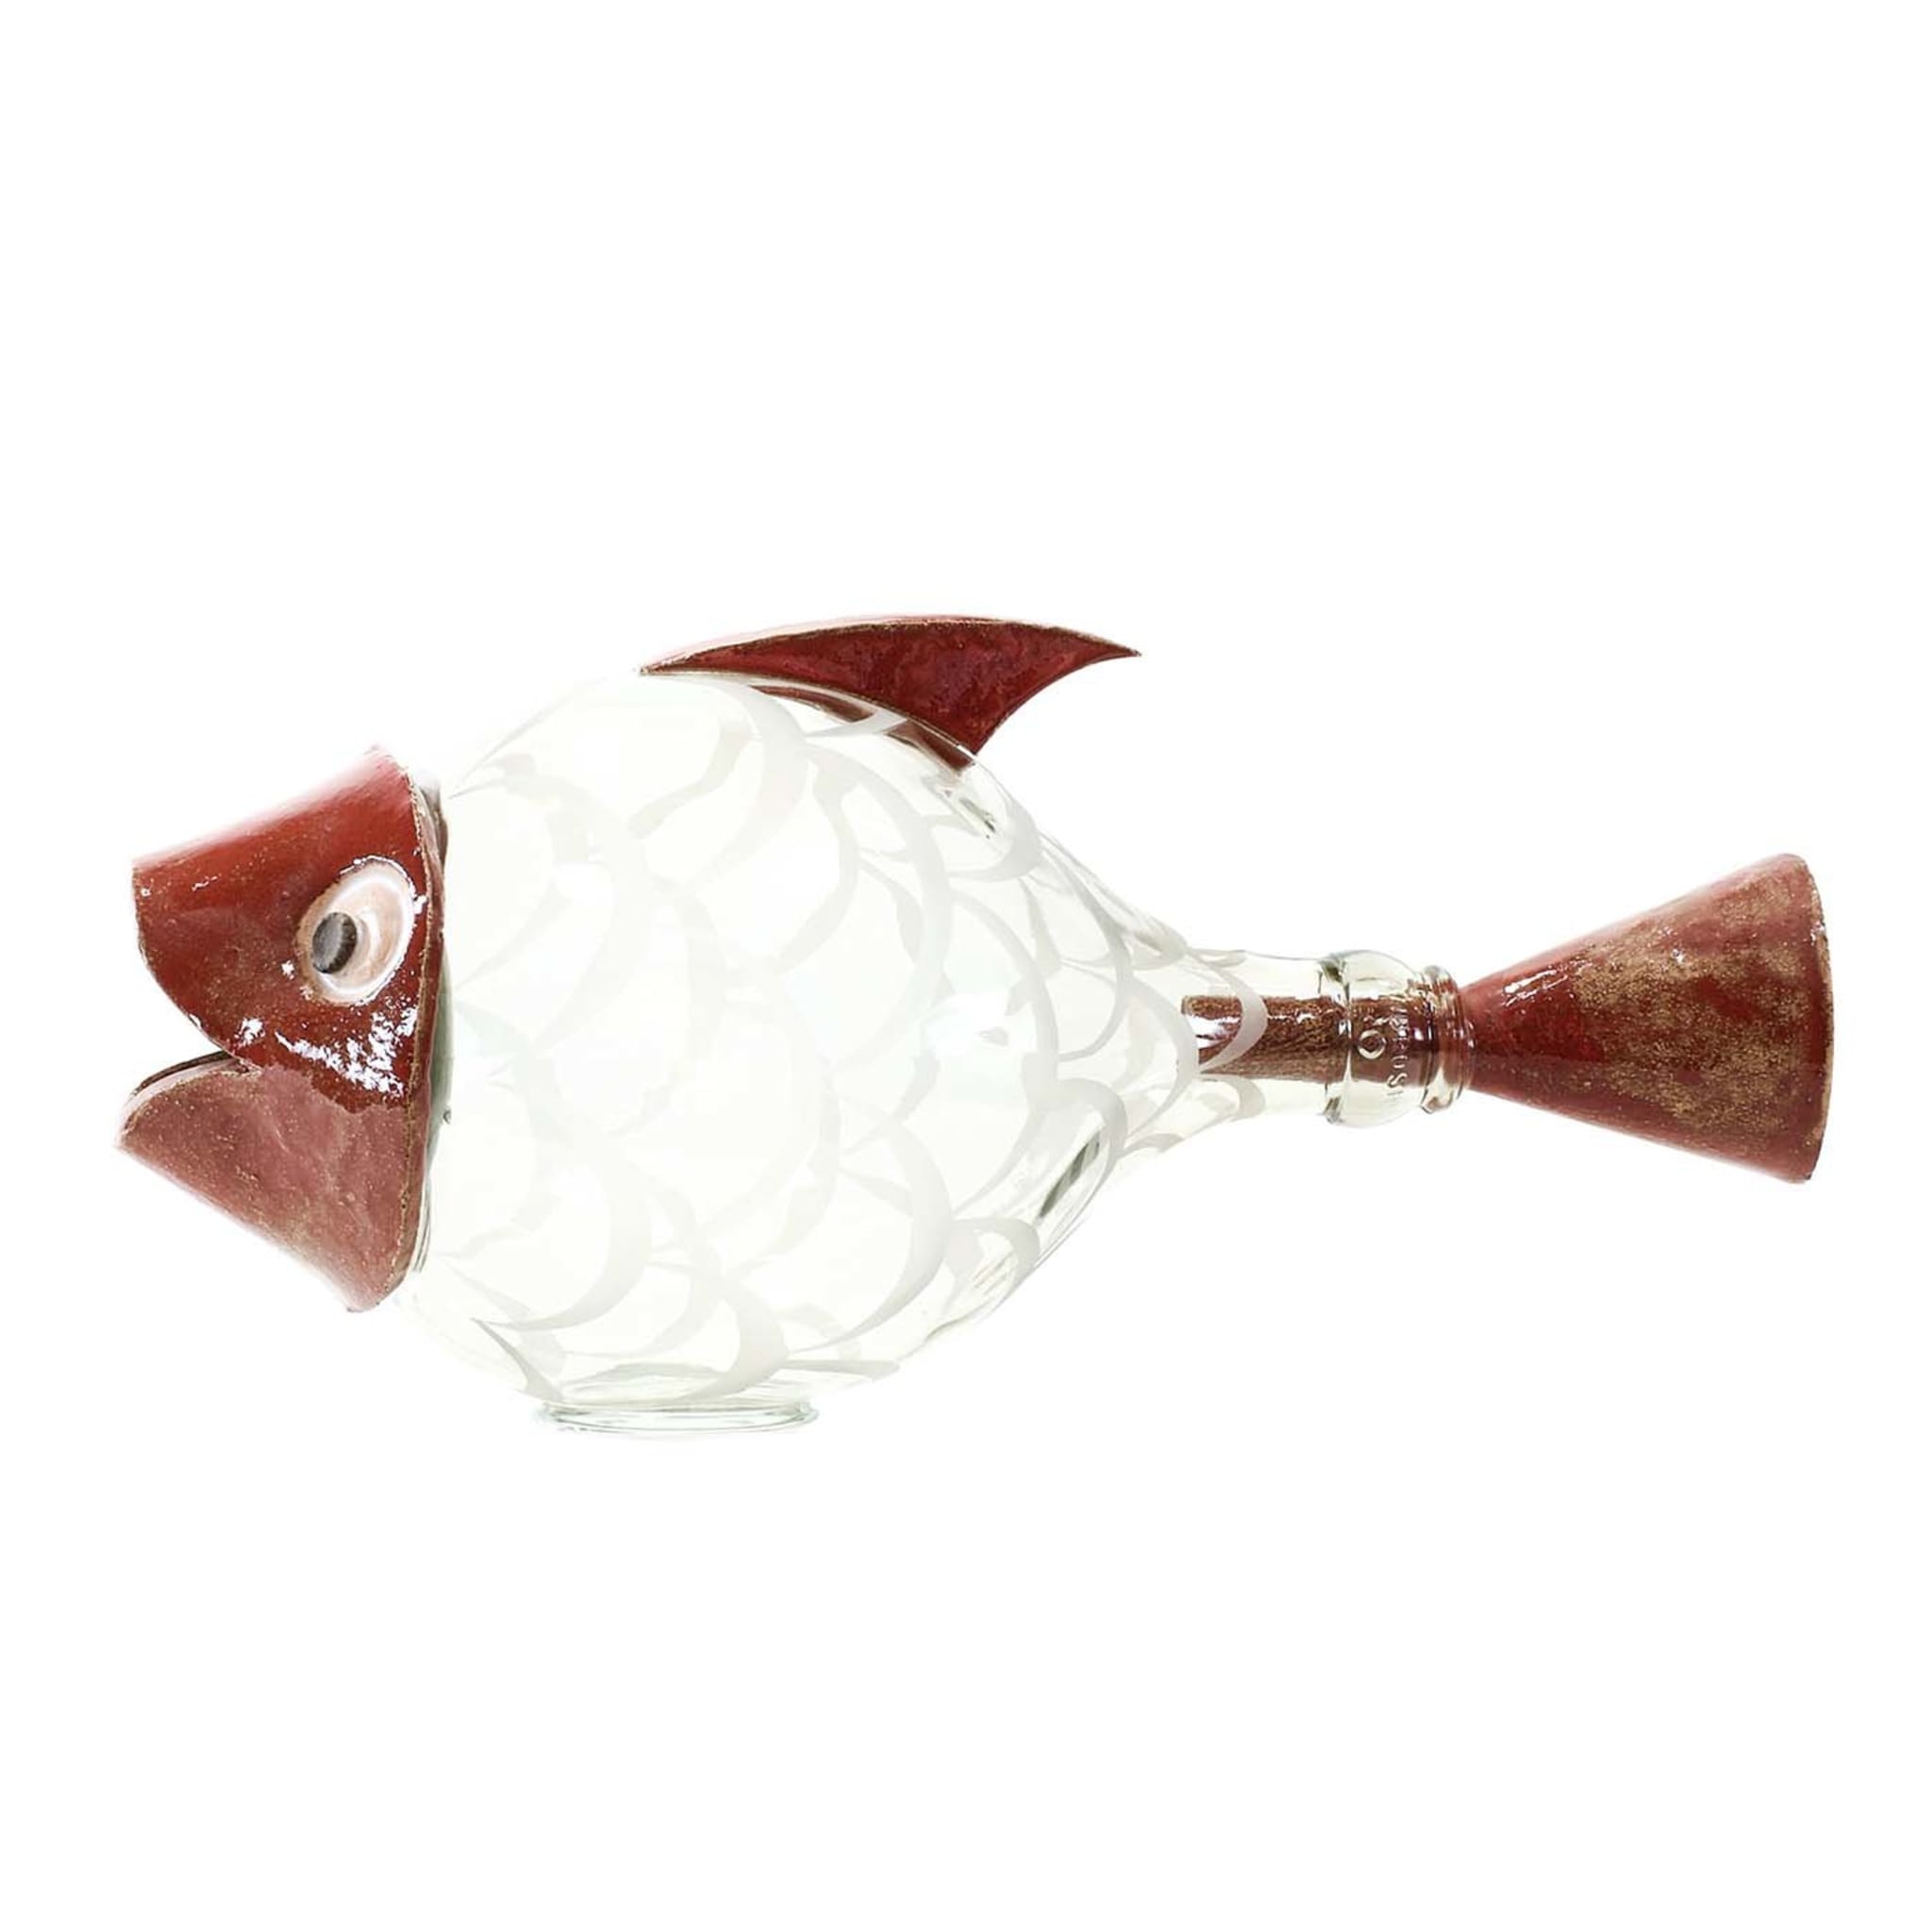 Escultura Pesce Palla Roja - Vista principal